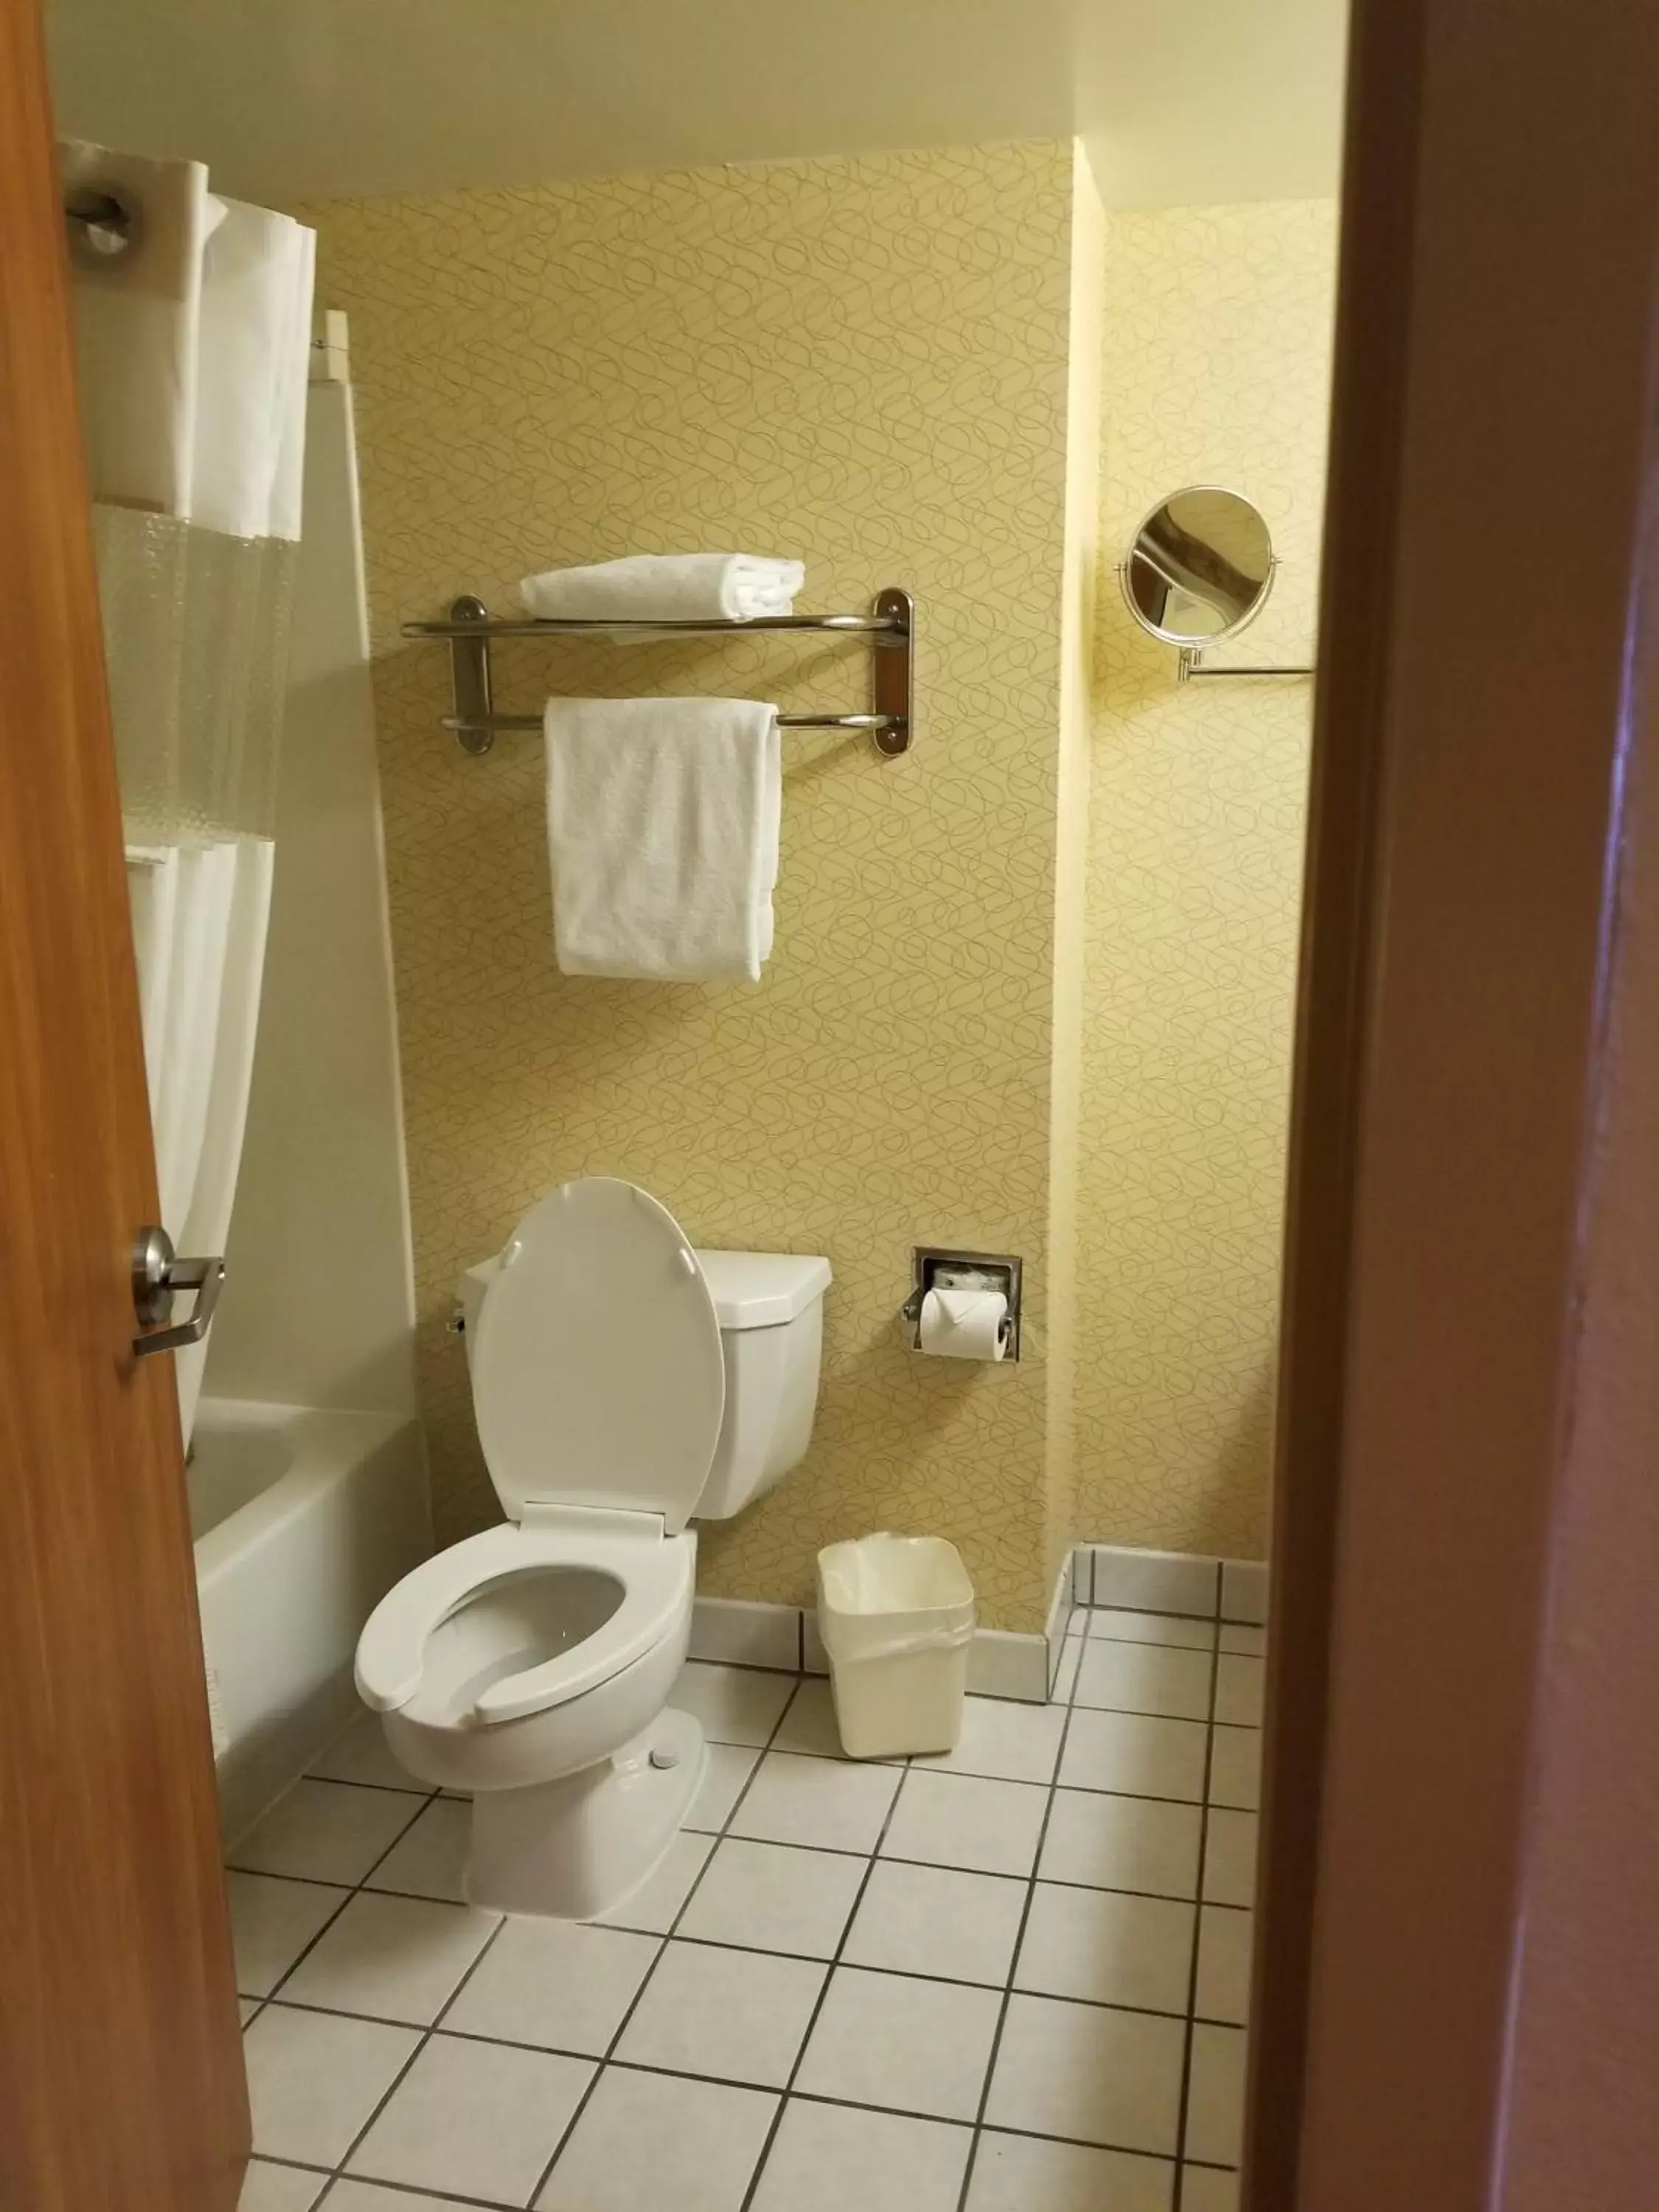 Bathroom in Days Inn by Wyndham Tulsa Central